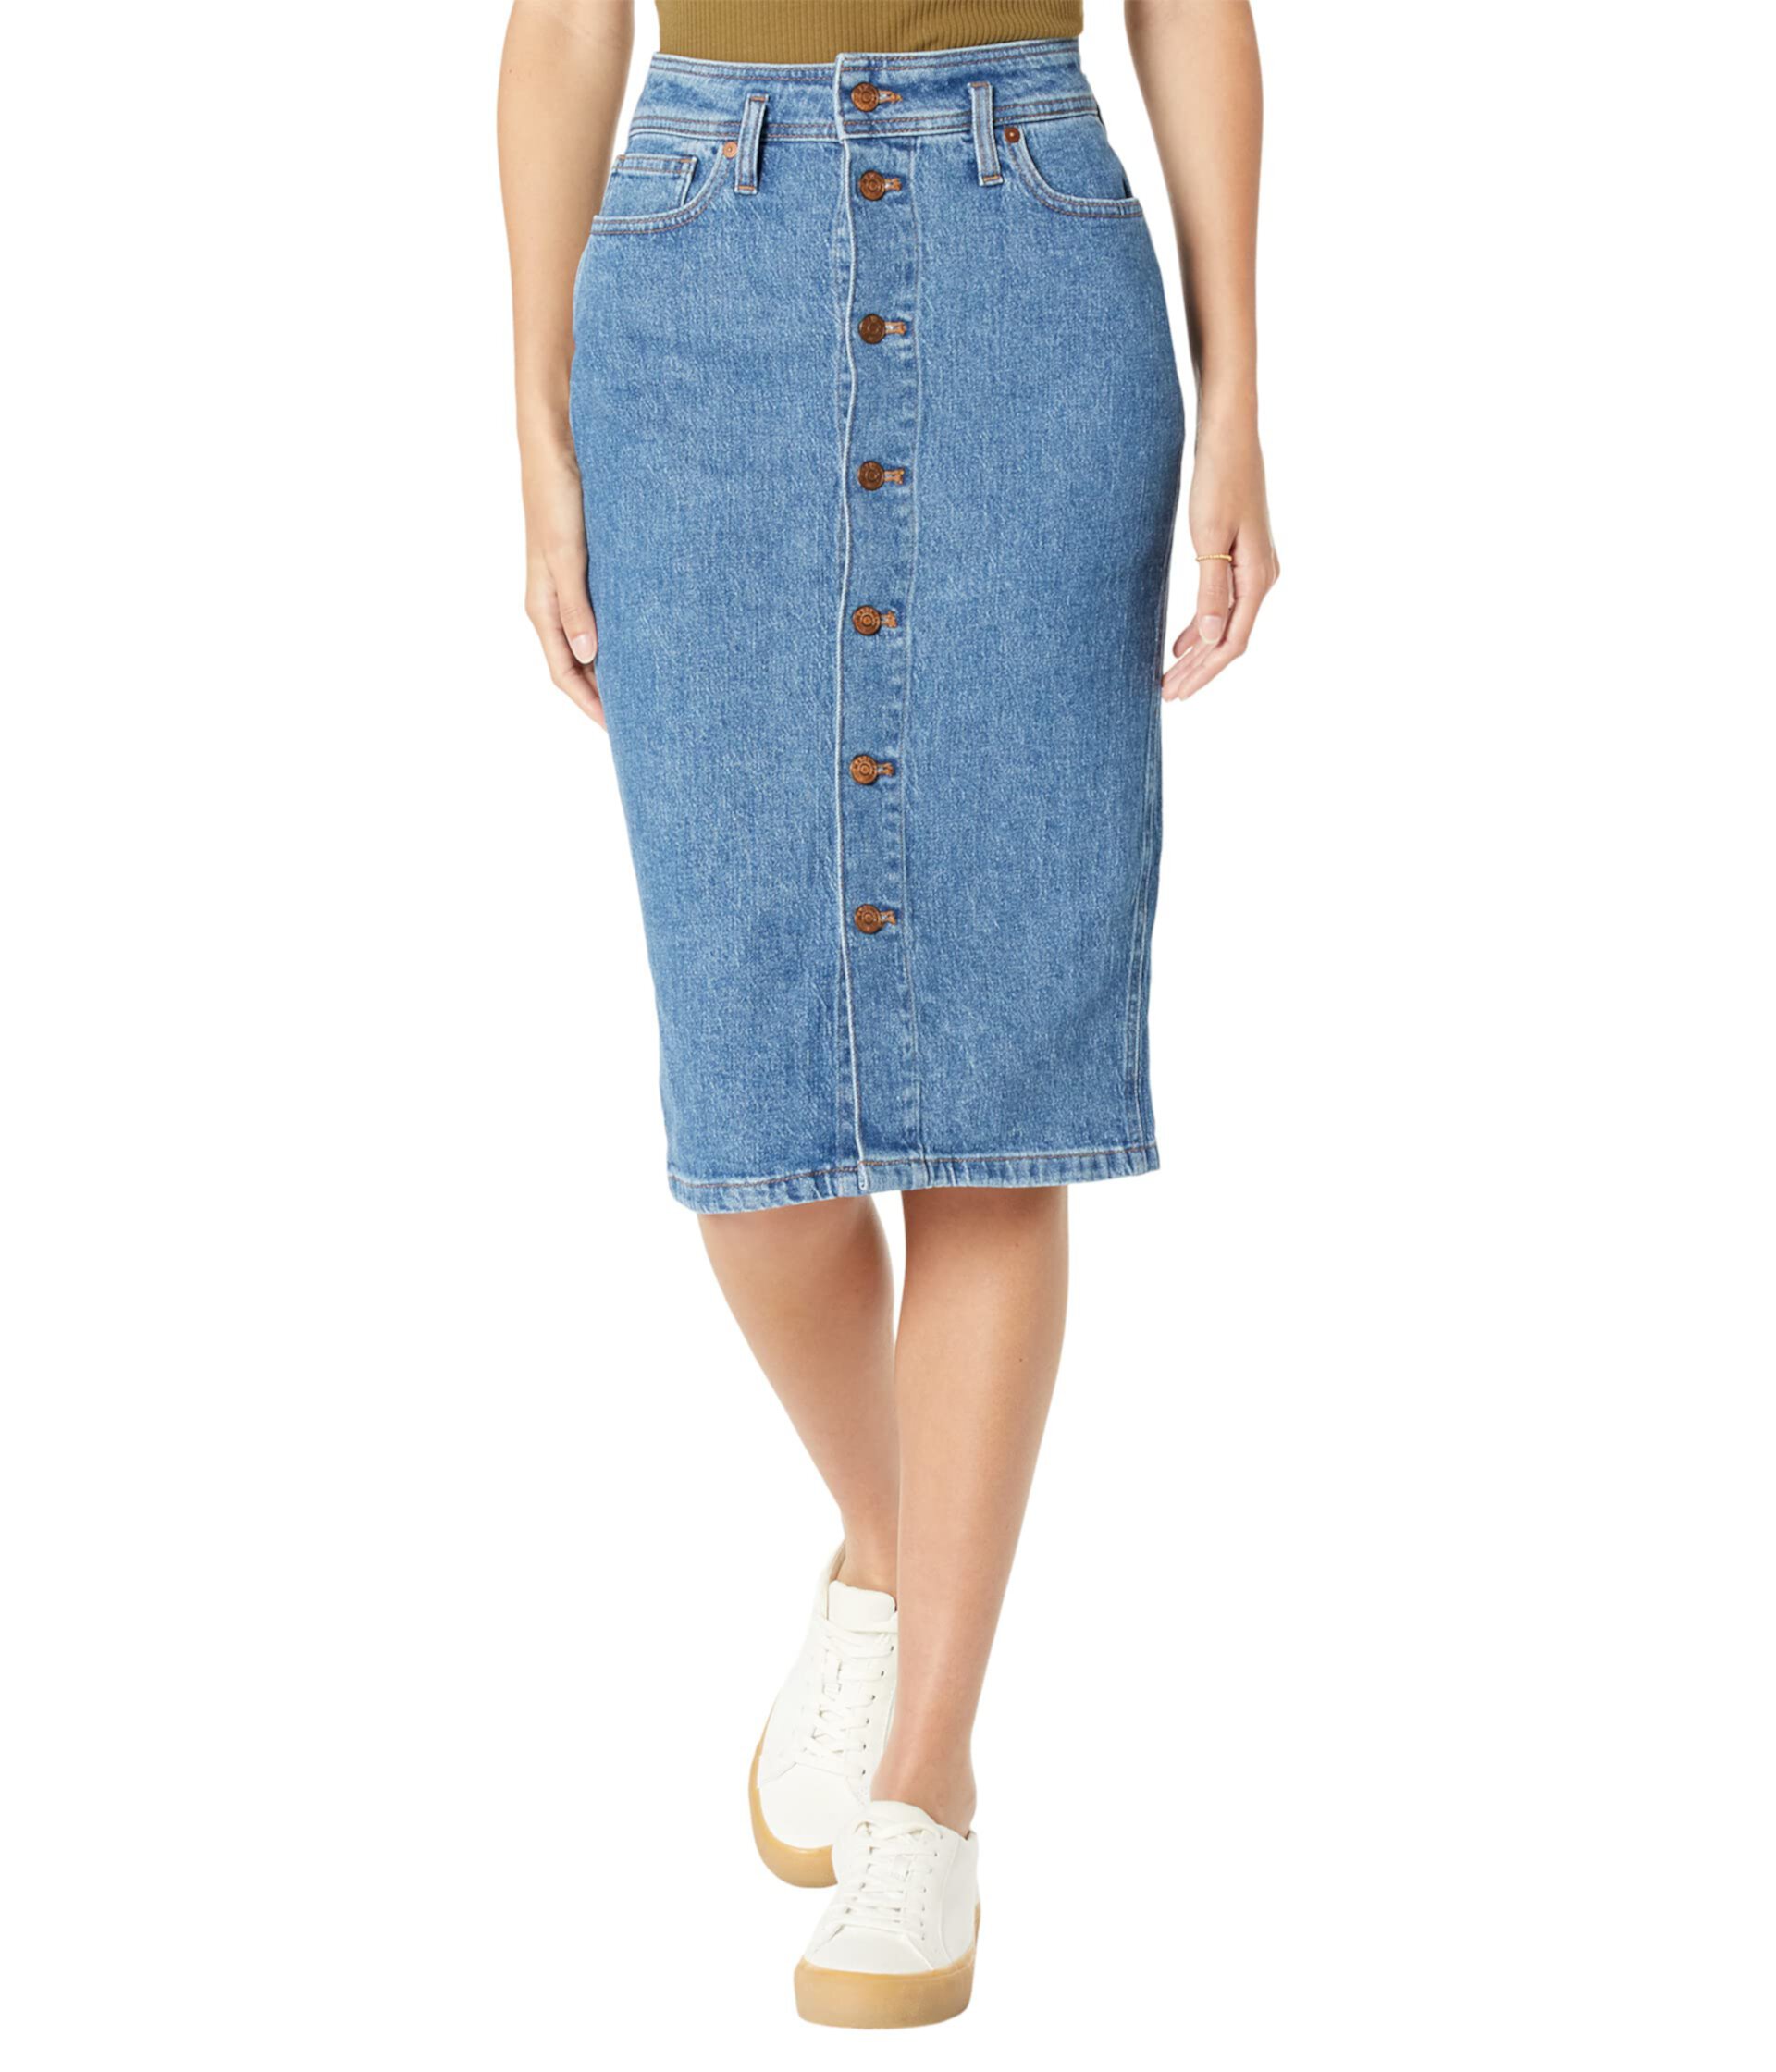 Джинсовая юбка-миди с высокой талией цвета Holton Wash Madewell